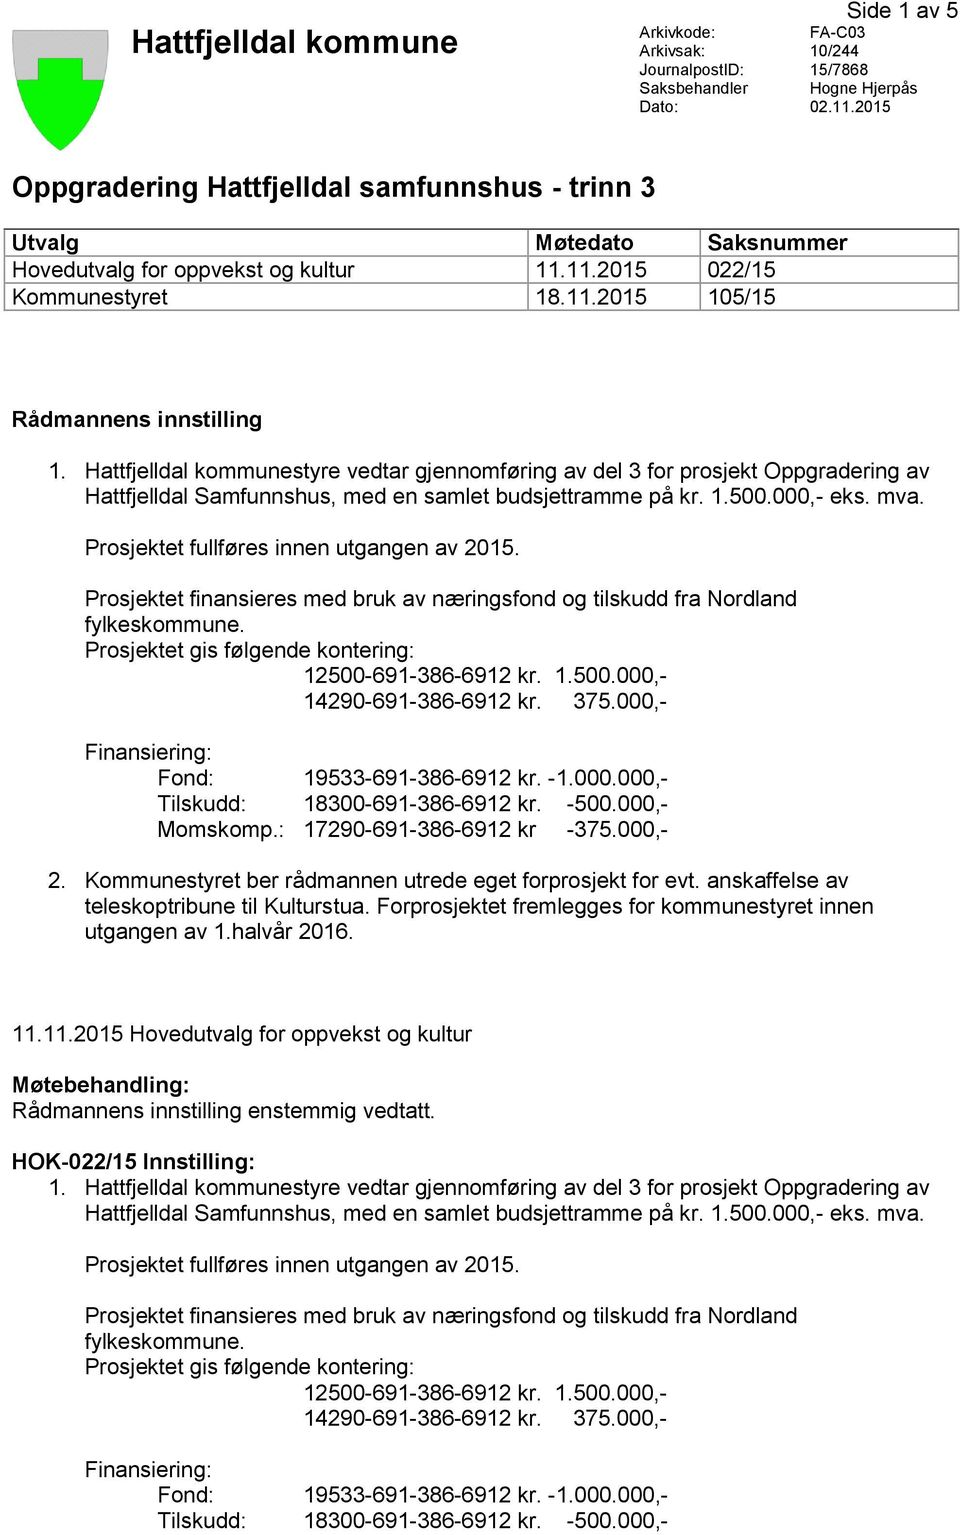 Hattfjelldal kommunestyre vedtar gjennomføring av del 3 for prosjekt Oppgradering av Hattfjelldal Samfunnshus, med en samlet budsjettramme på kr. 1.500.000,- eks. mva.